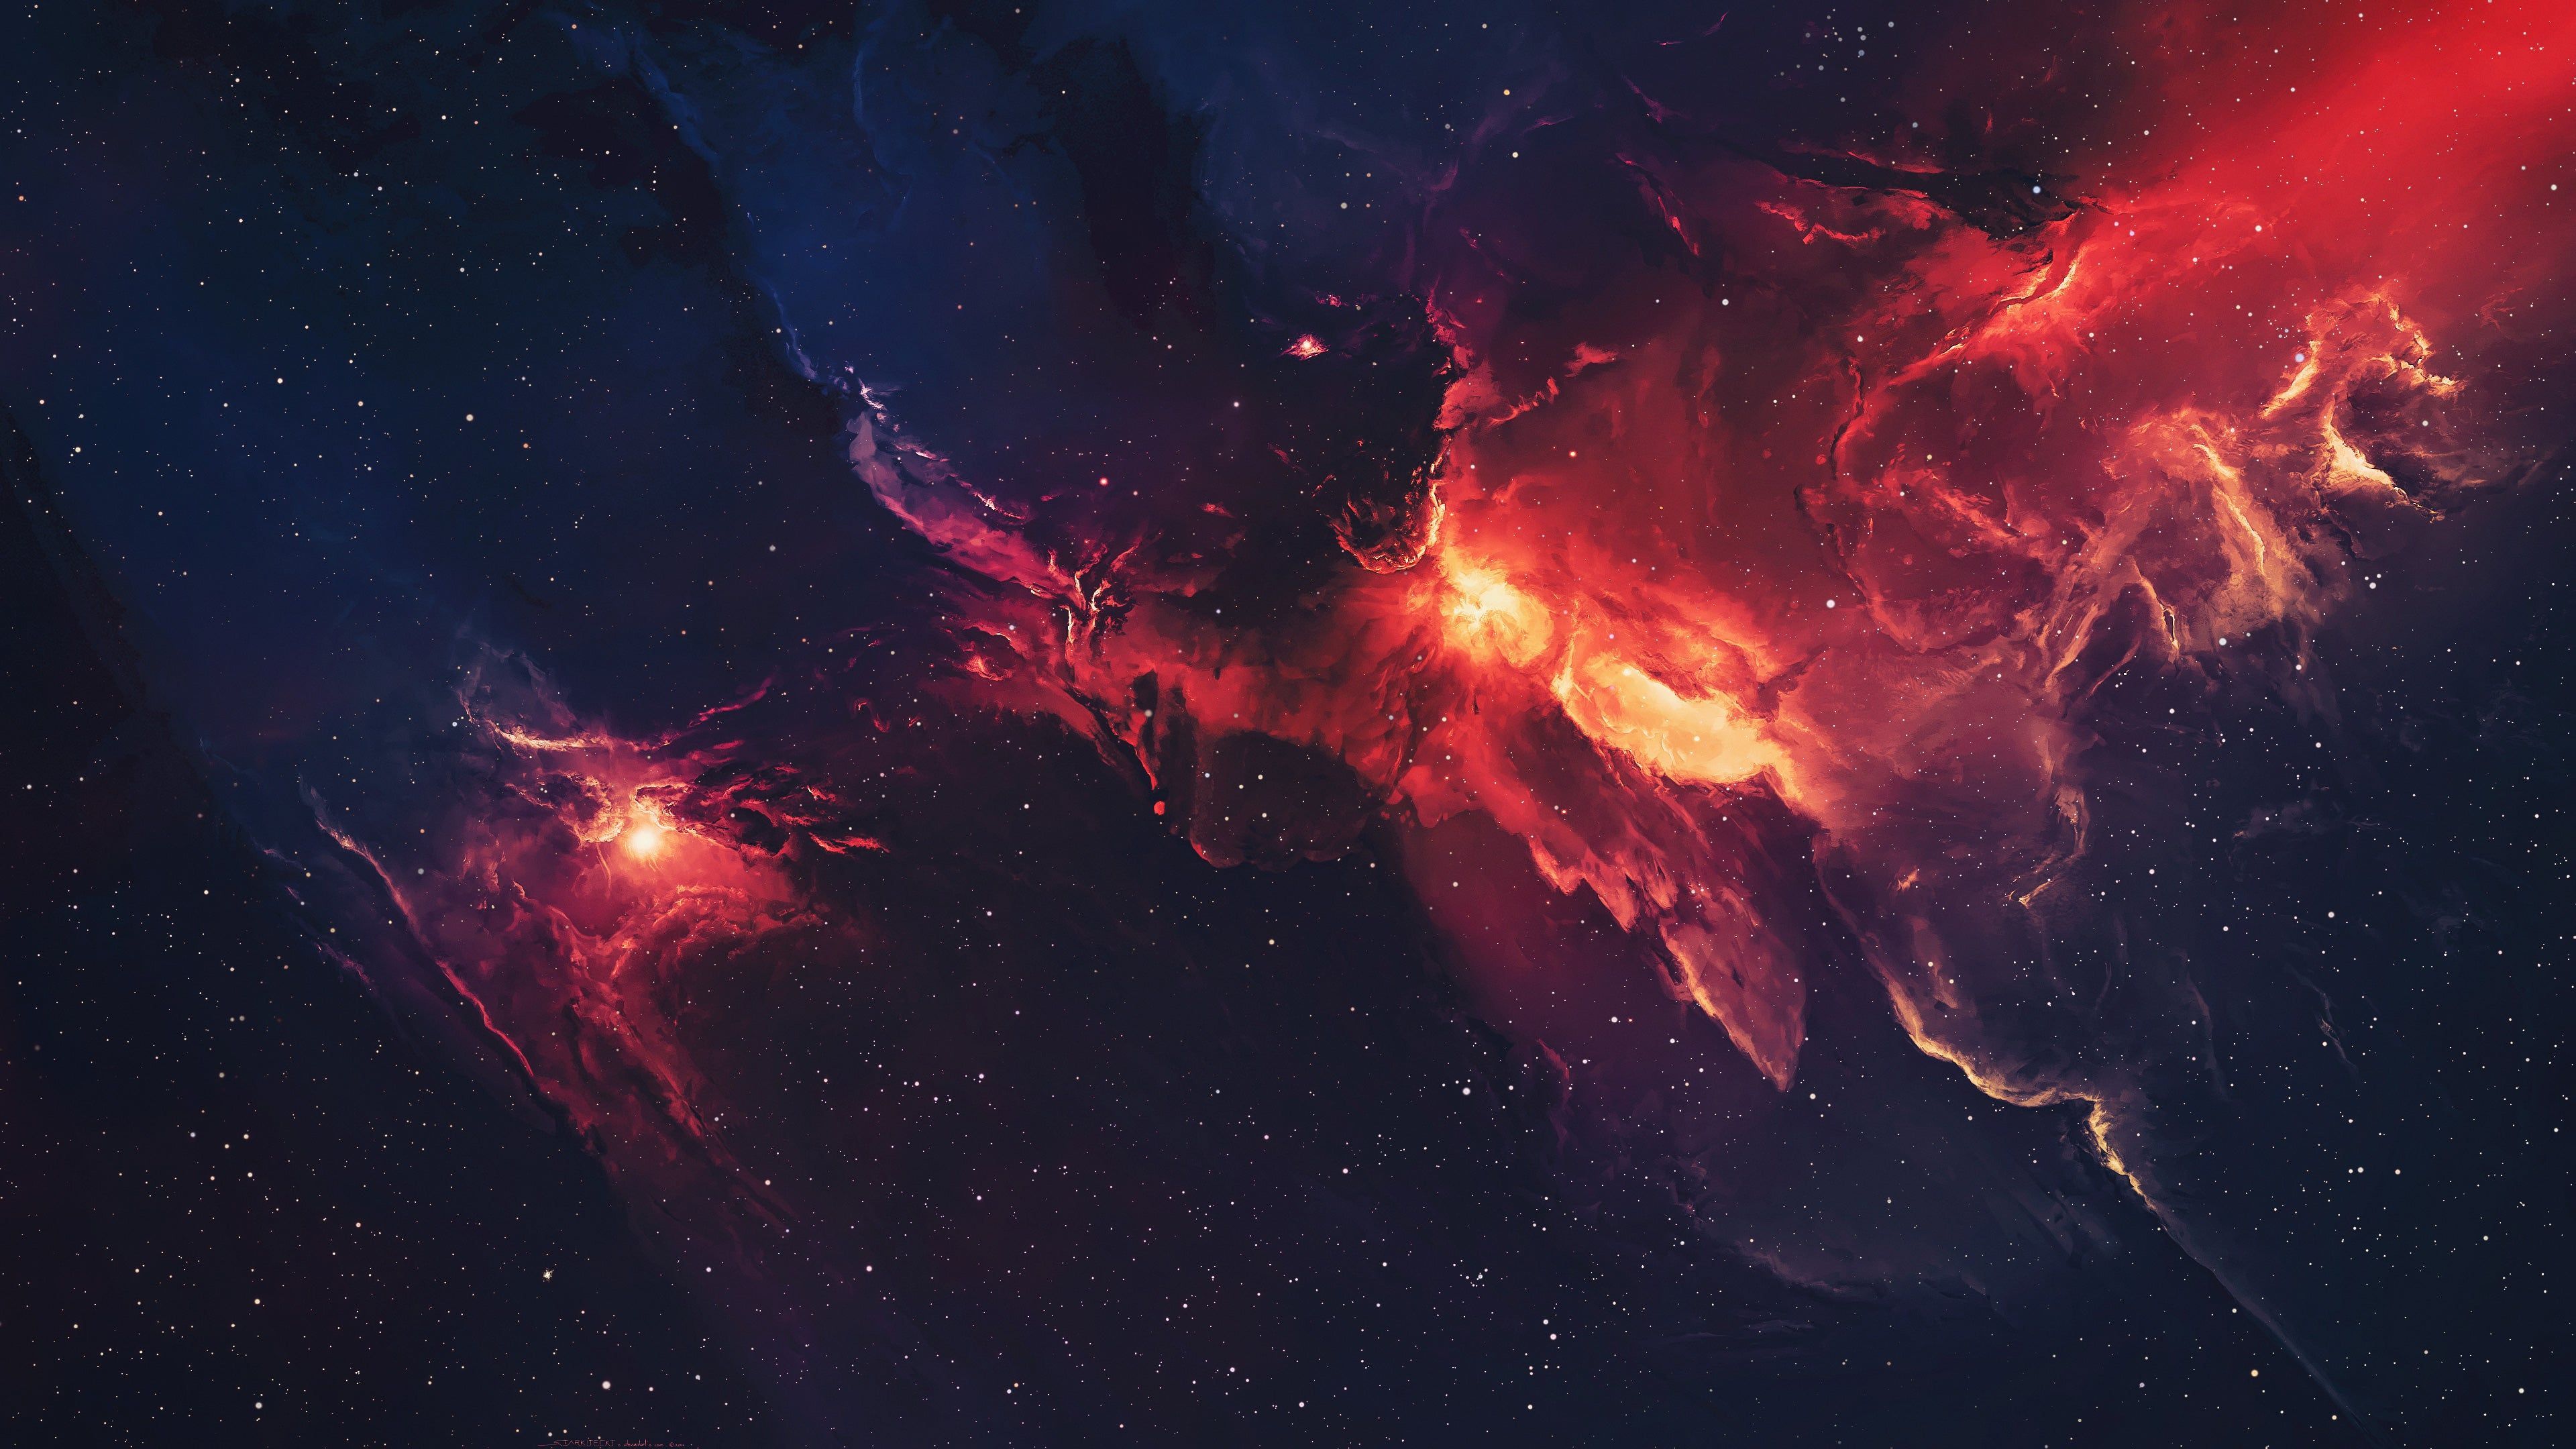 Red and Blue Nebula 4K wallpaper. Nebula wallpaper, Wallpaper space, Star wallpaper